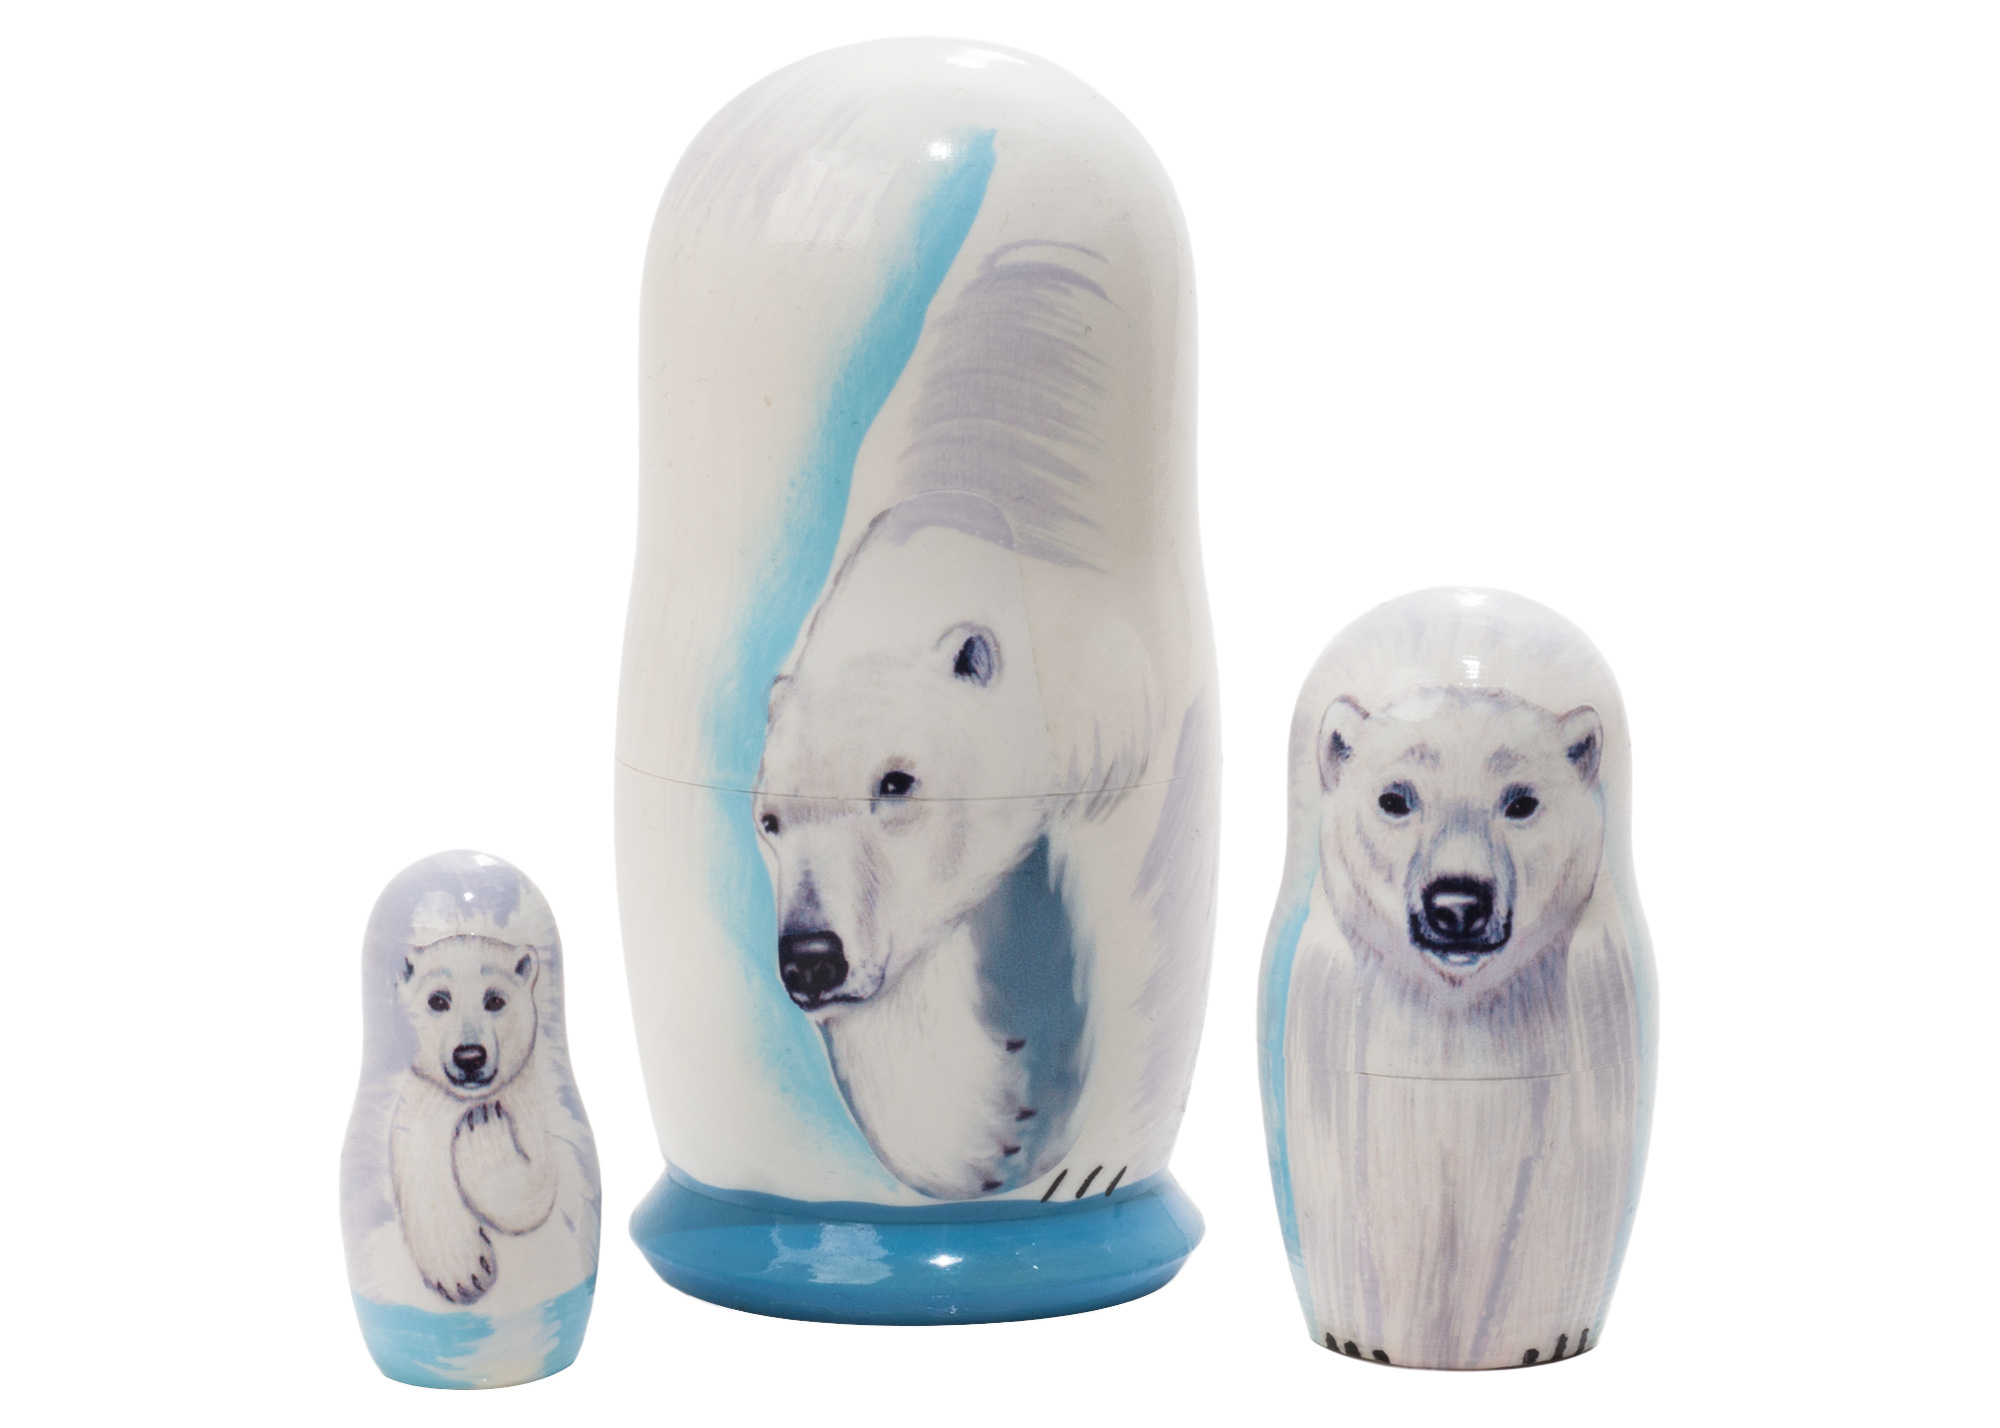 Buy Матрешка «Белый медведь» 3 места 9 см at GoldenCockerel.com